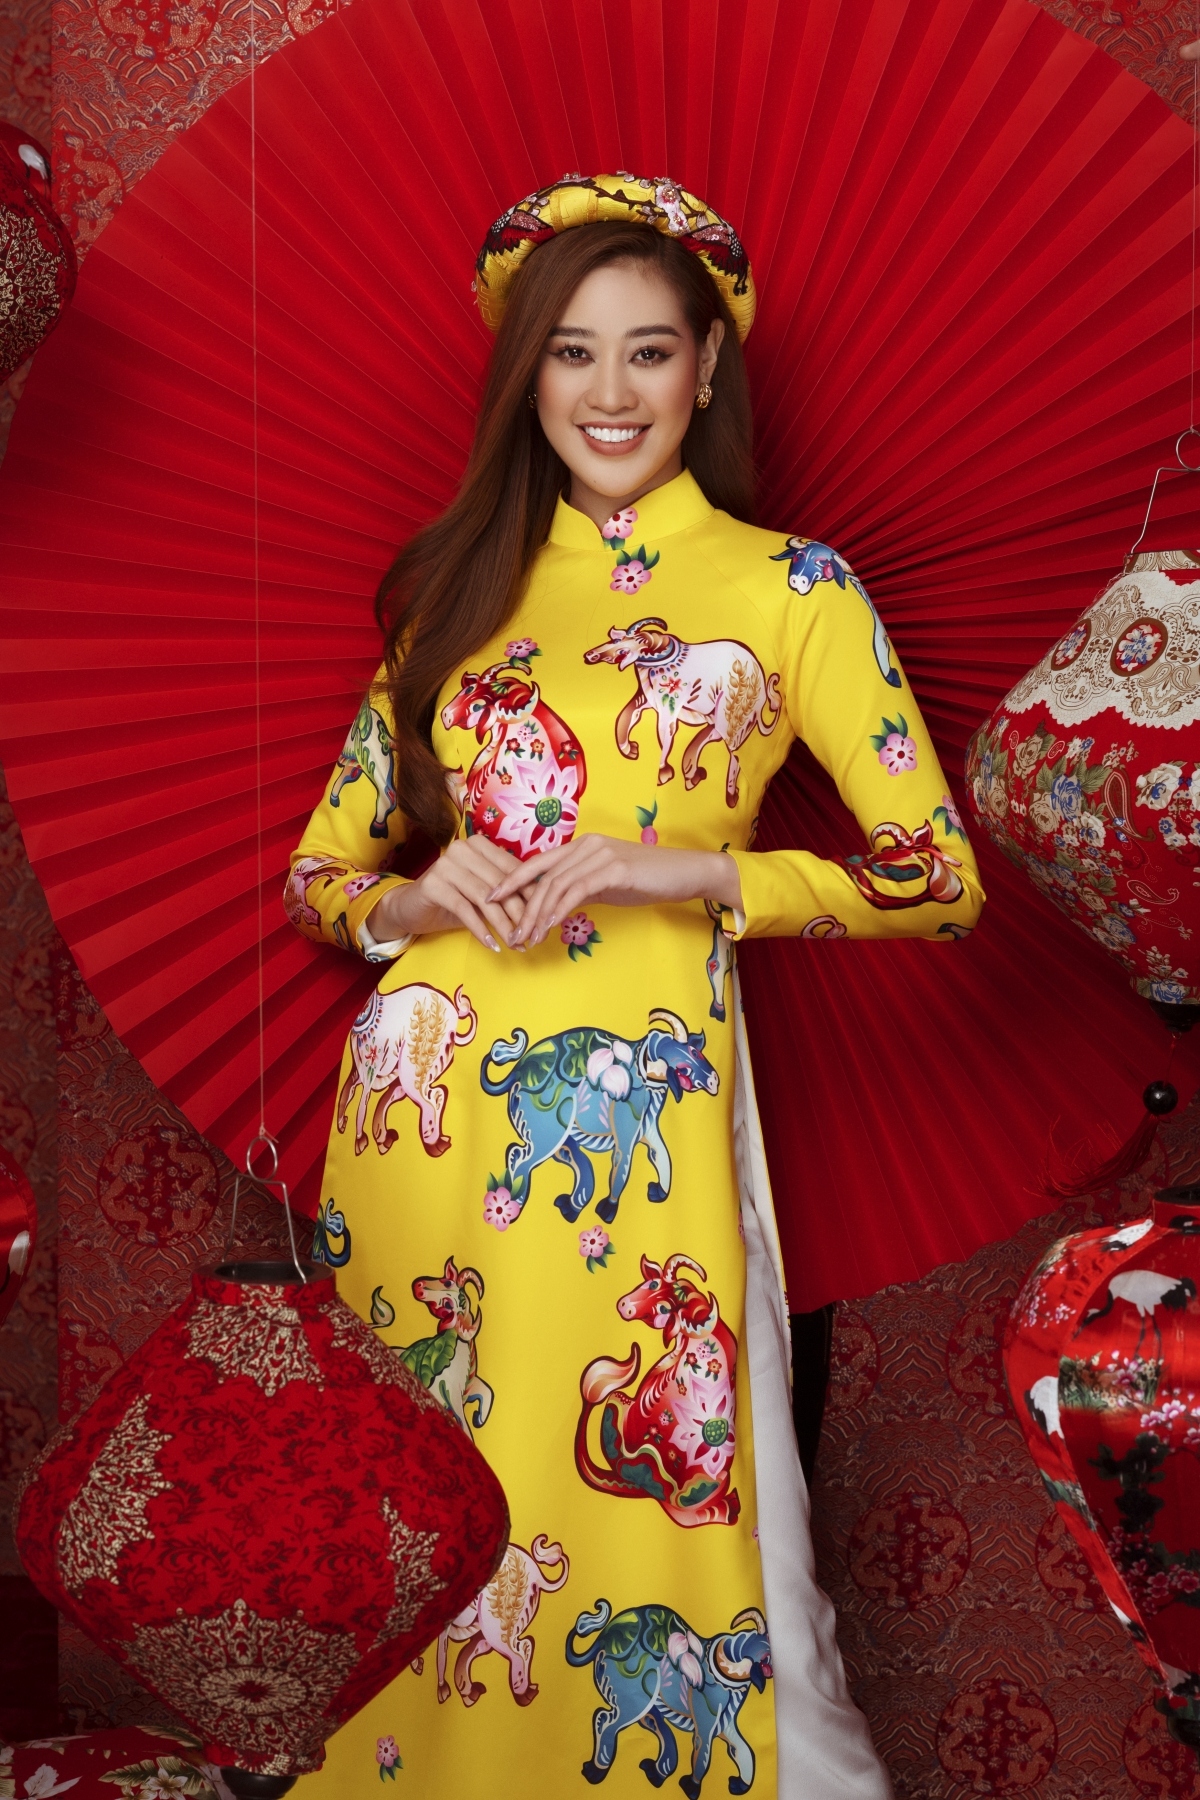 Hoa hậu Khánh Vân: “Tôi thích không khí của Tết xưa hơn”